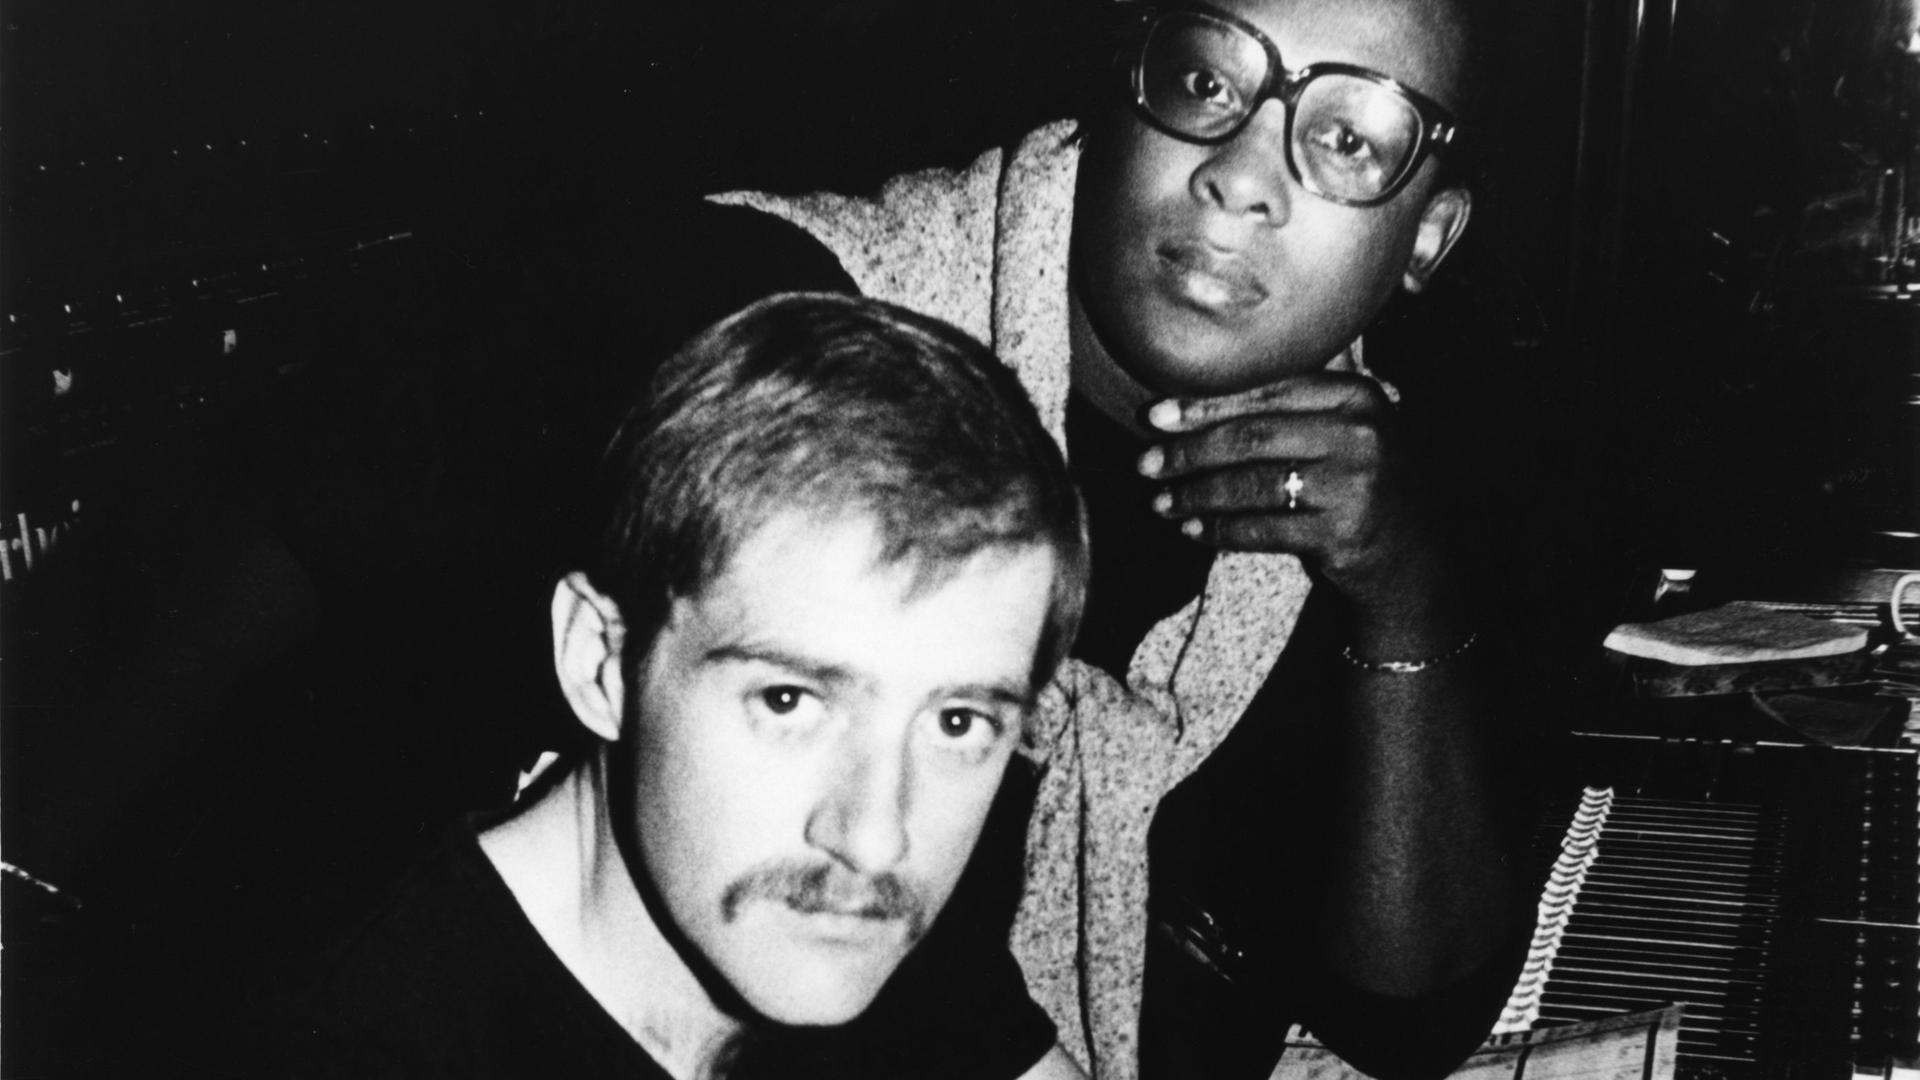 Der Produzent Patrick Cowley am Mischpult in einem Tonstudio, hinter ihm steht der Sänger Sylvester James, ca. 1980. 